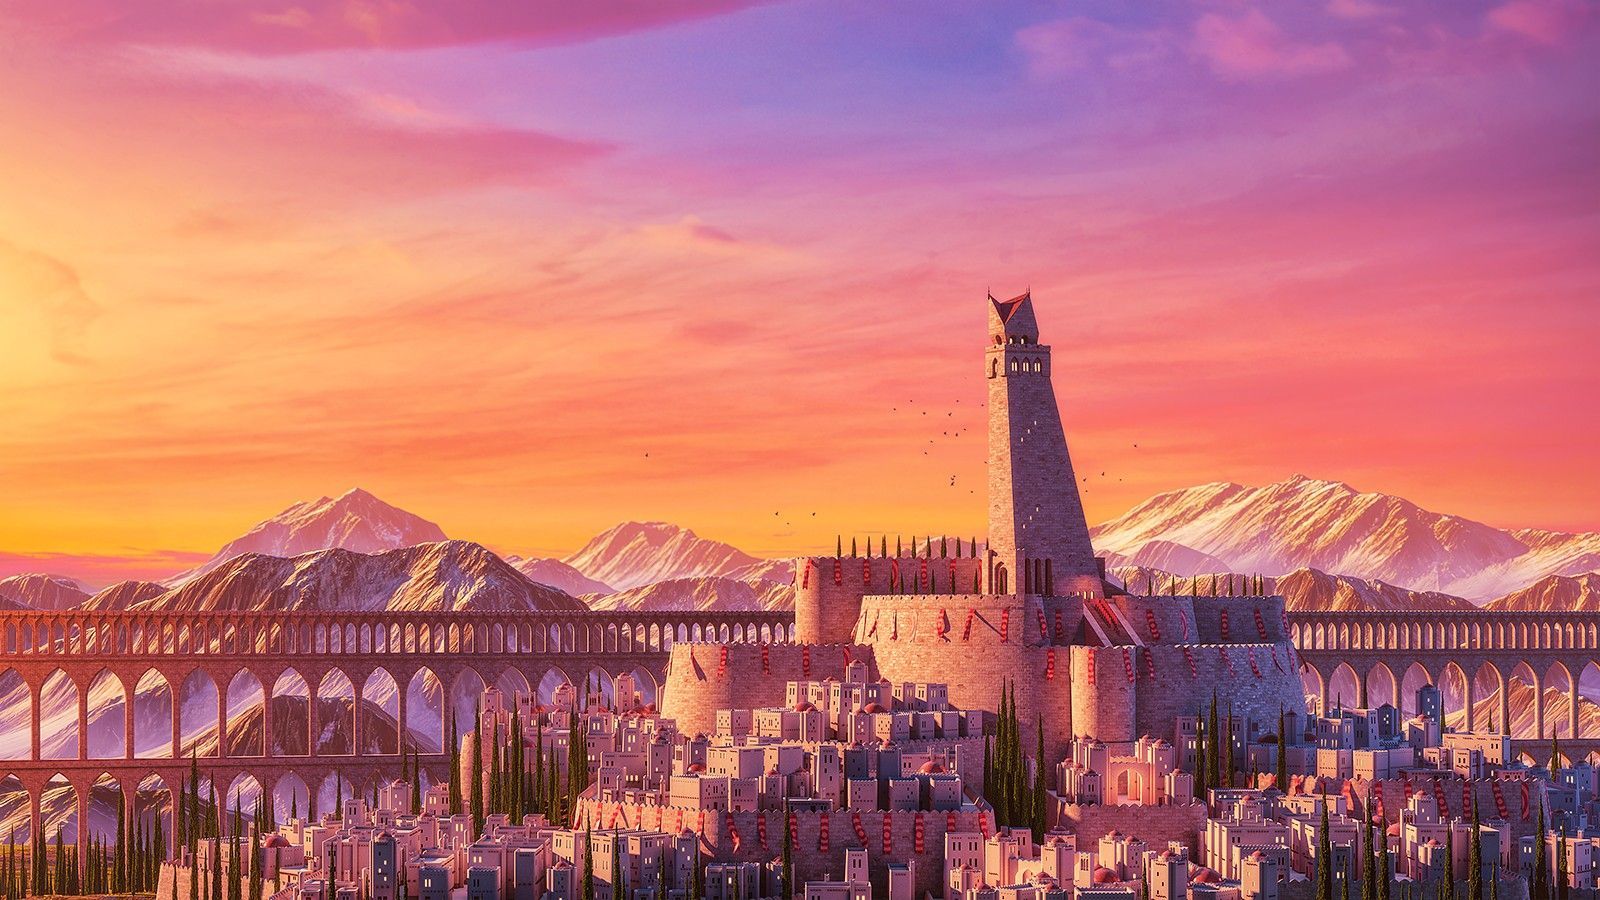 Anime 1600x900 anime city sunset landscape. Sunset landscape art